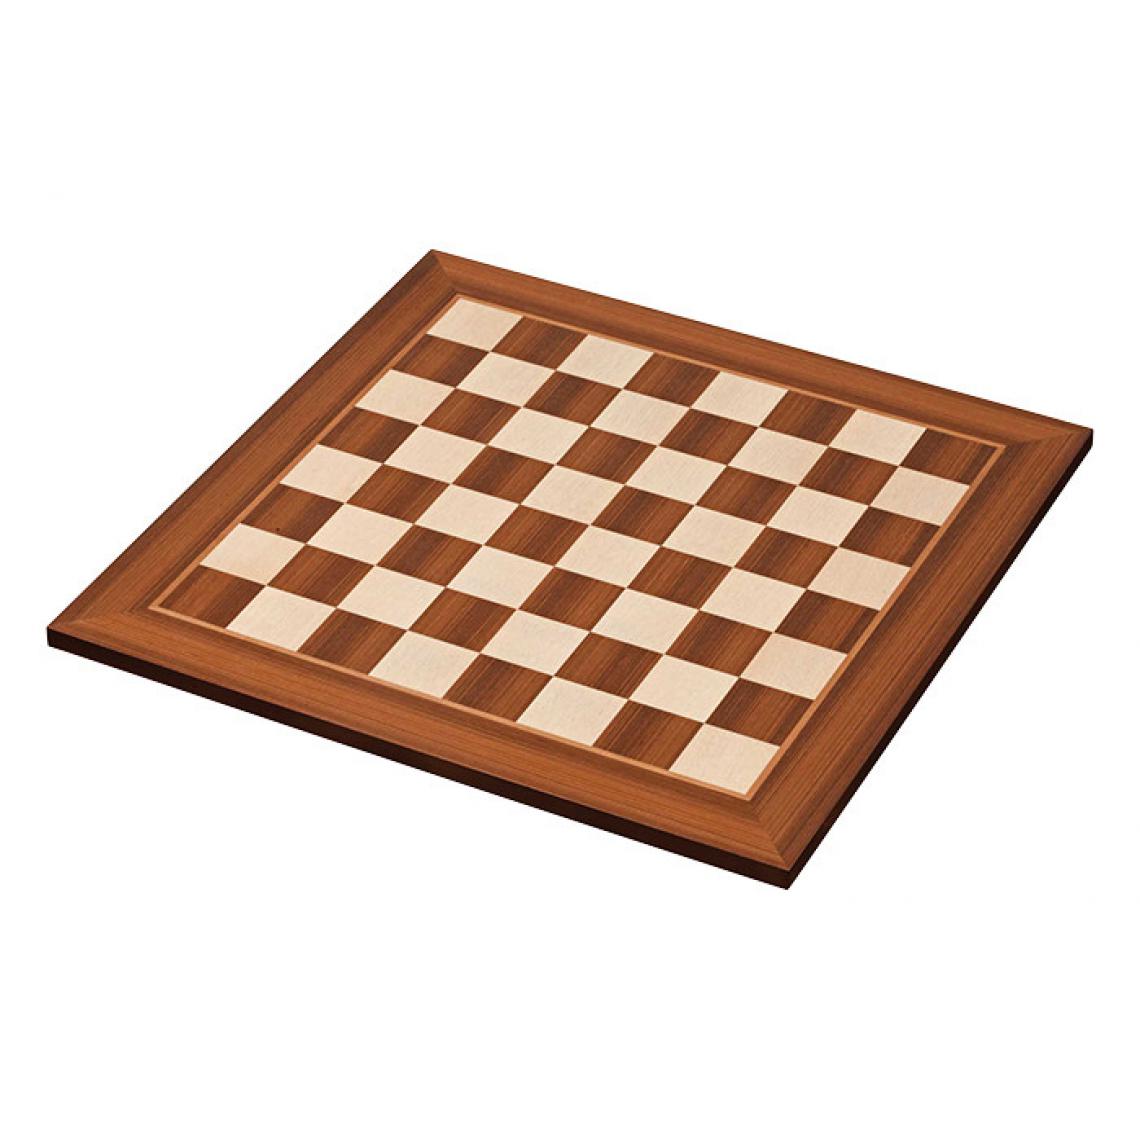 Buffalo - Plateau de jeu d'échec en bois (45x45cm) - Casse-tête